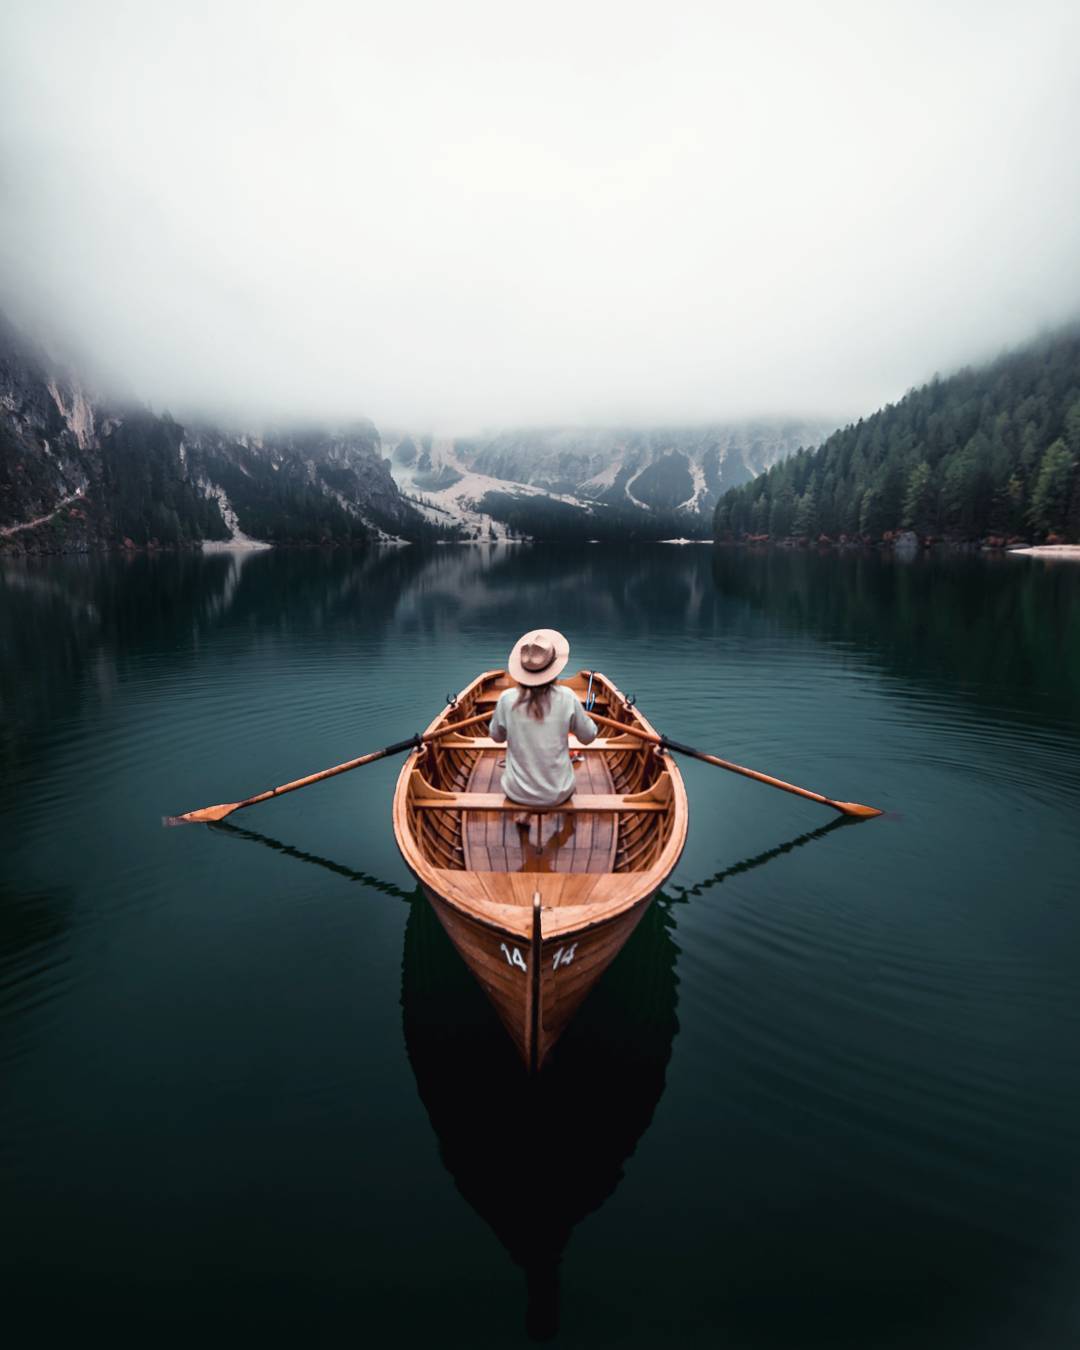 Фото Девушка в шляпе сидит в лодке посреди озера, by Marcel Siebert